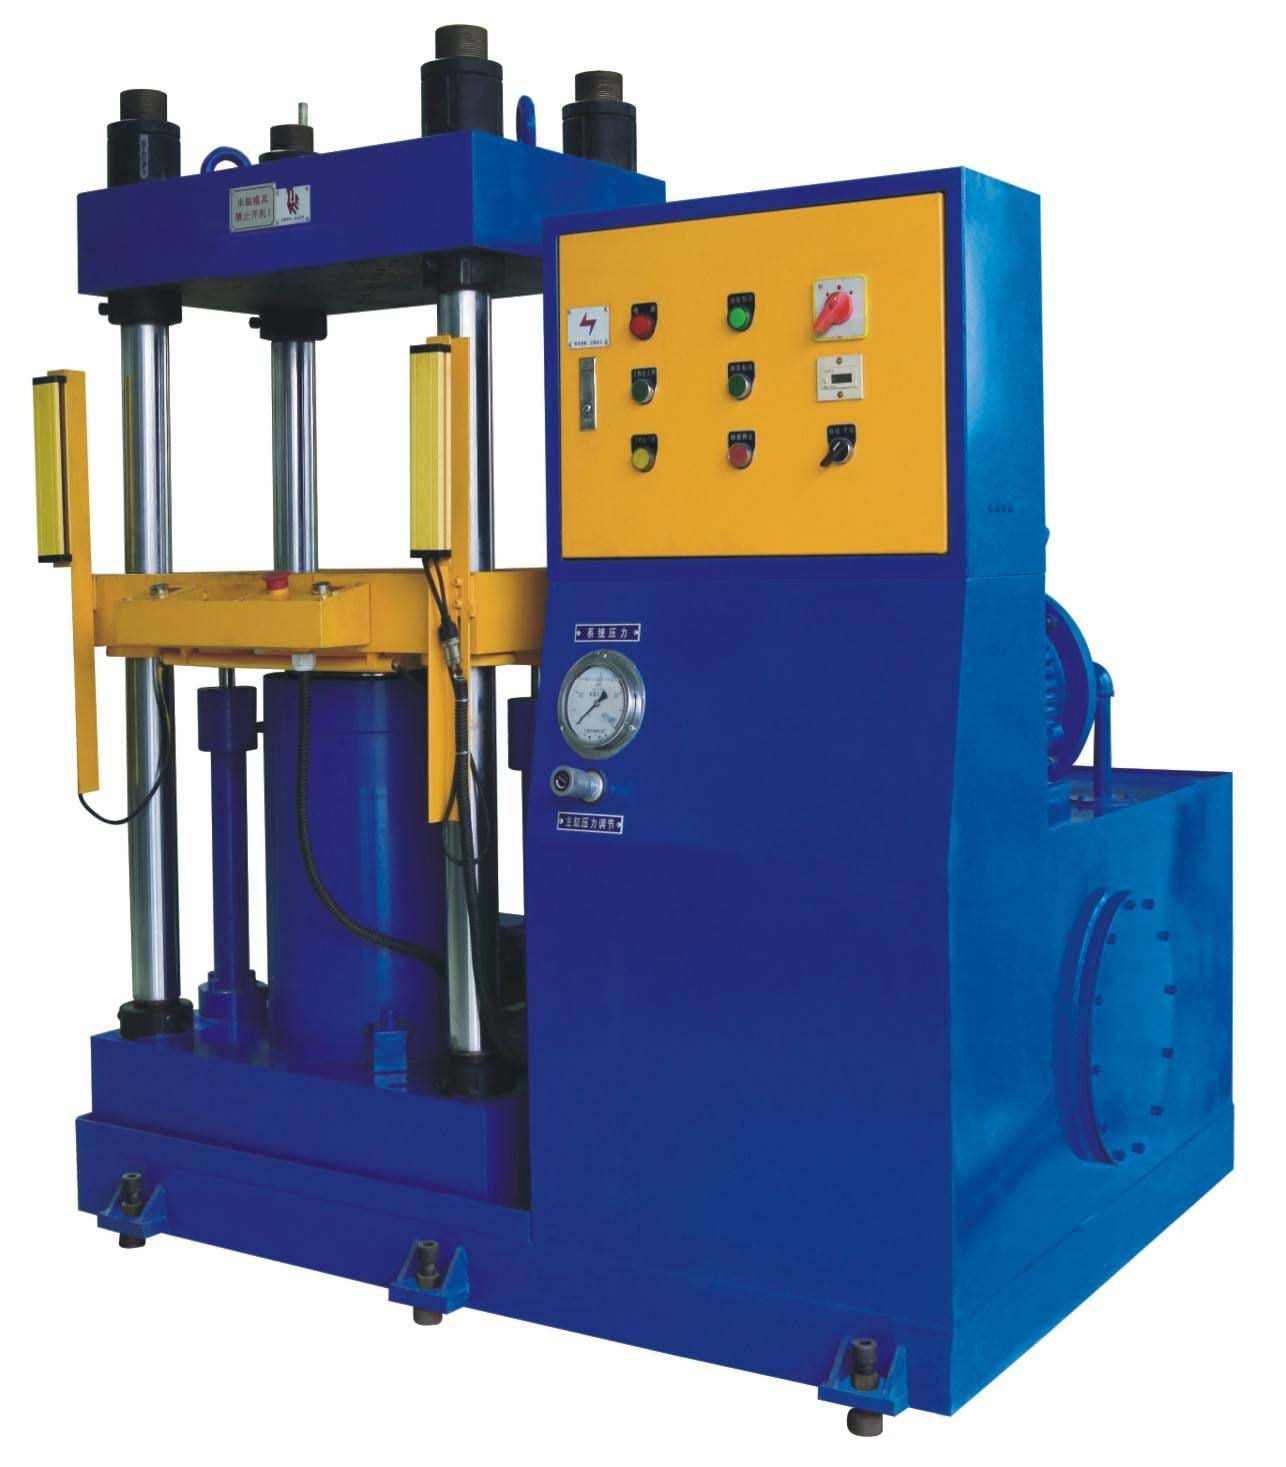  Four-column downshift hydraulic press